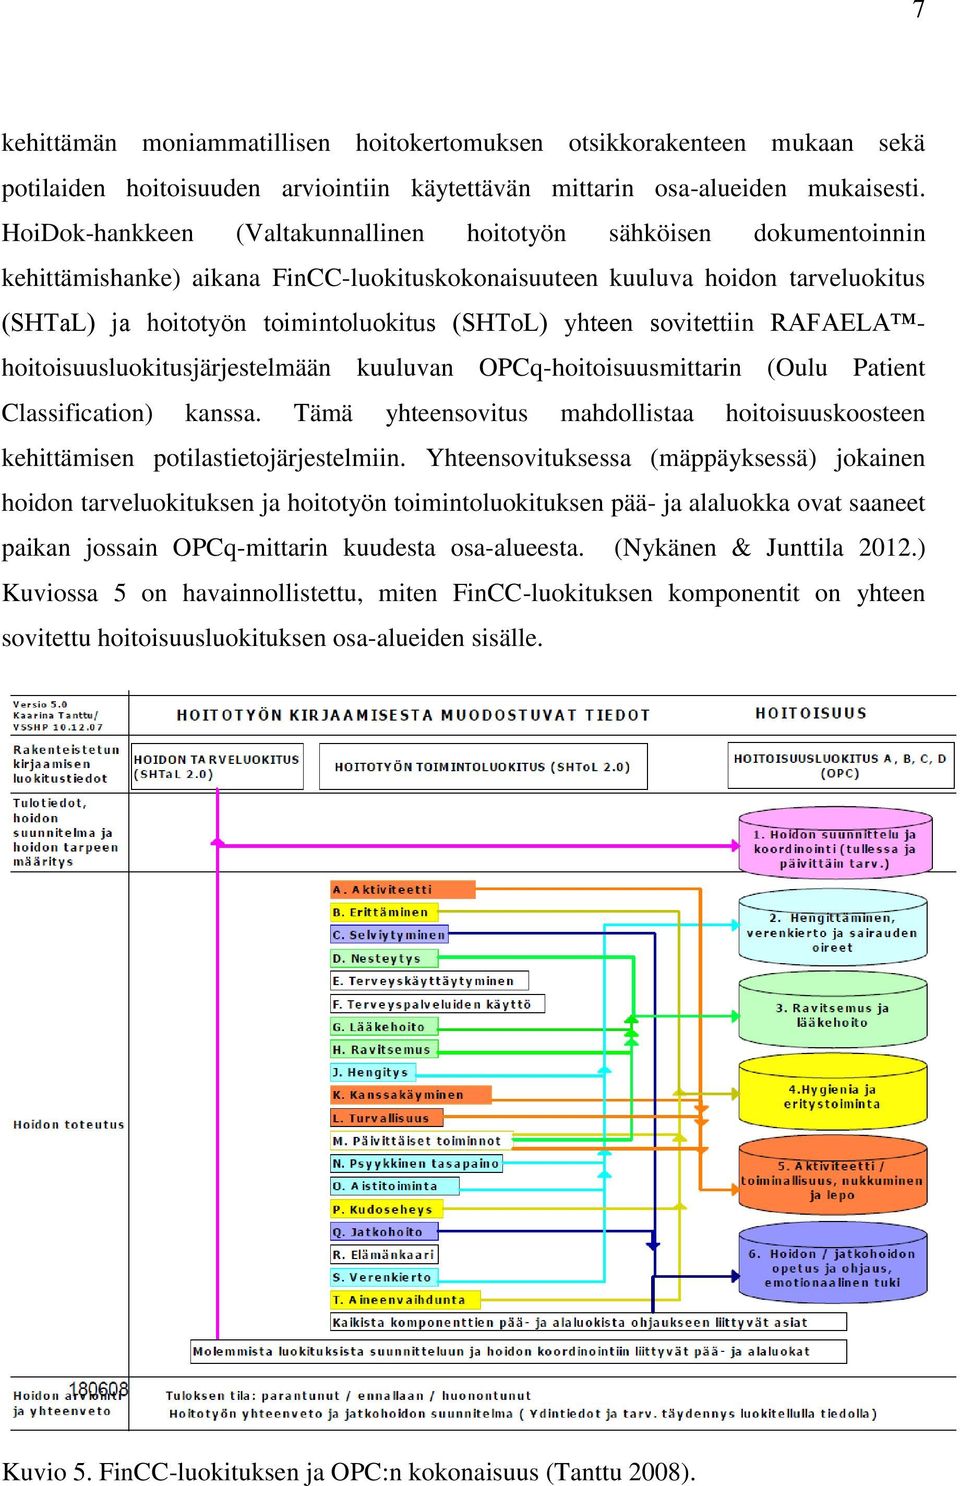 yhteen sovitettiin RAFAELA hoitoisuusluokitusjärjestelmään kuuluvan OPCq-hoitoisuusmittarin (Oulu Patient Classification) kanssa.